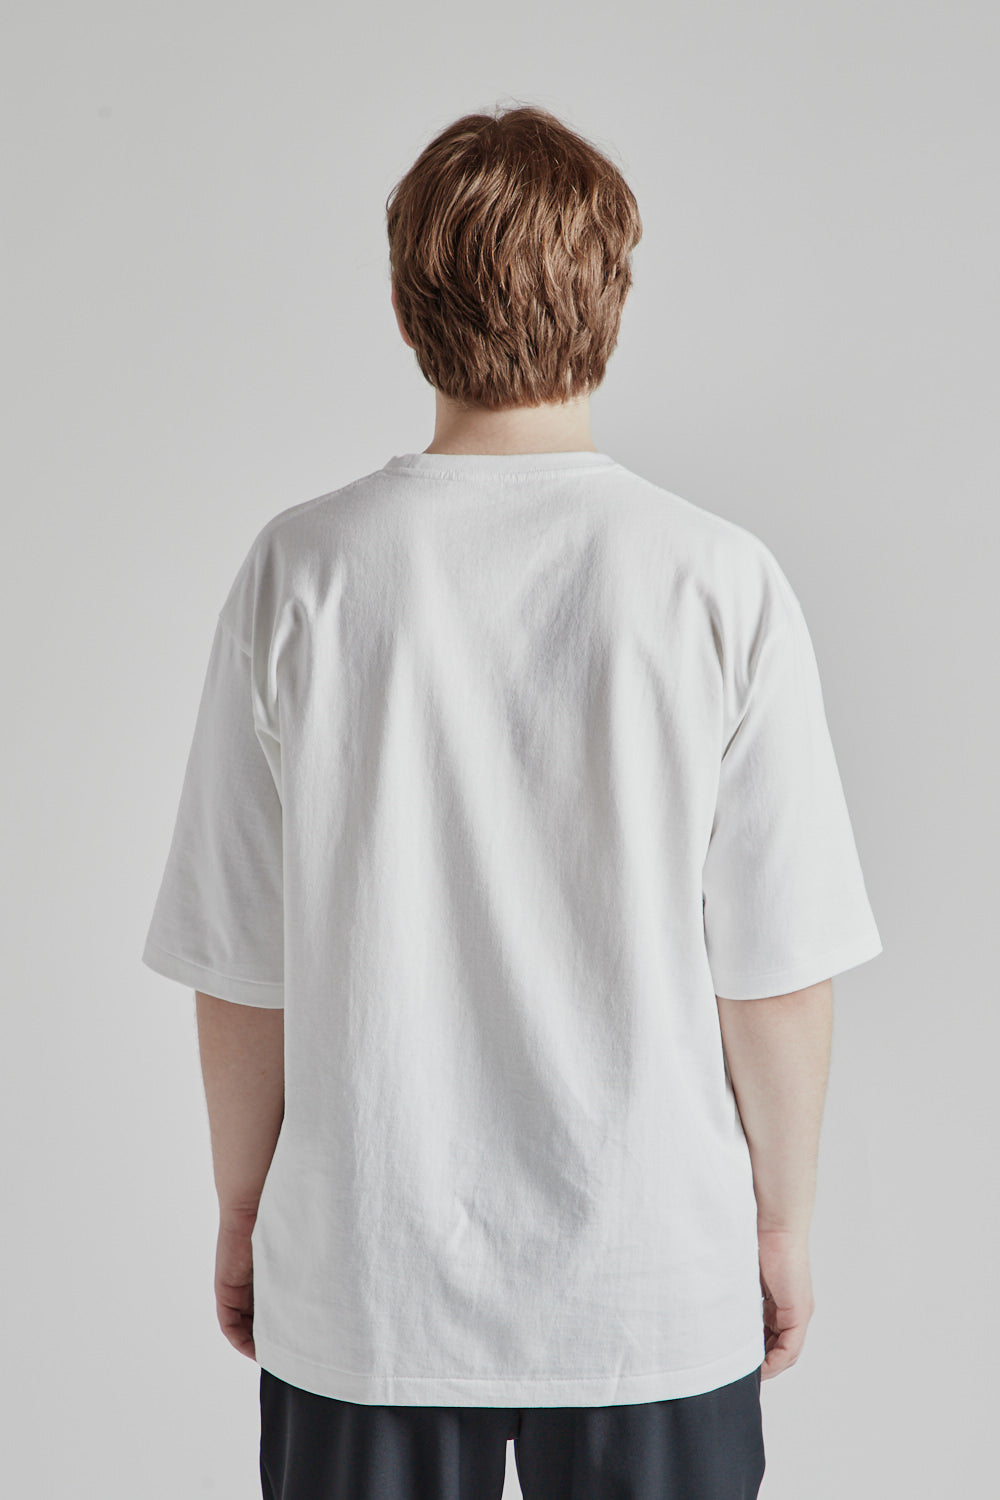 Meriyasu T-Shirts - White